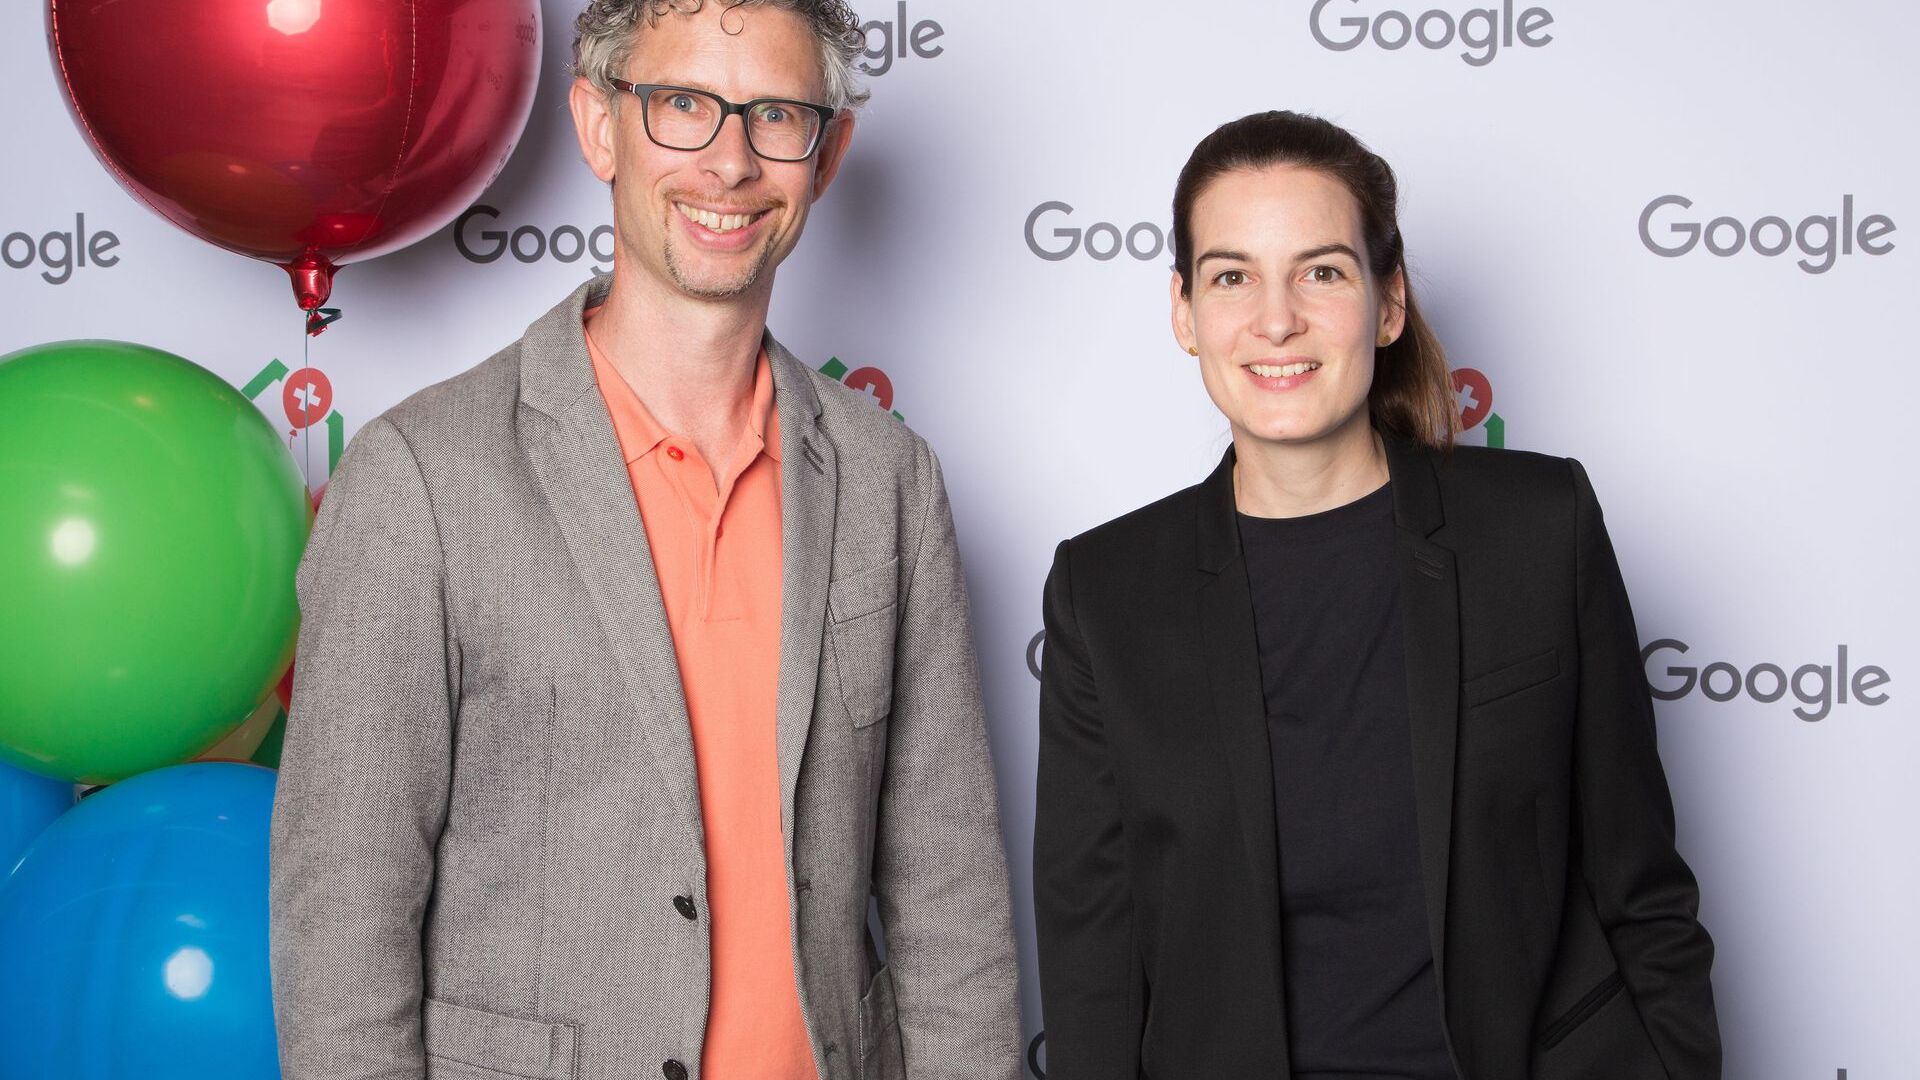 Ο Samuel Leiser και η Pia De Carli, η ομάδα μέσων της Google Switzerland, παρευρέθηκαν στα επίσημα εγκαίνια του νέου Google Campus Europaallee στη Ζυρίχη στις 27 Ιουνίου 2022